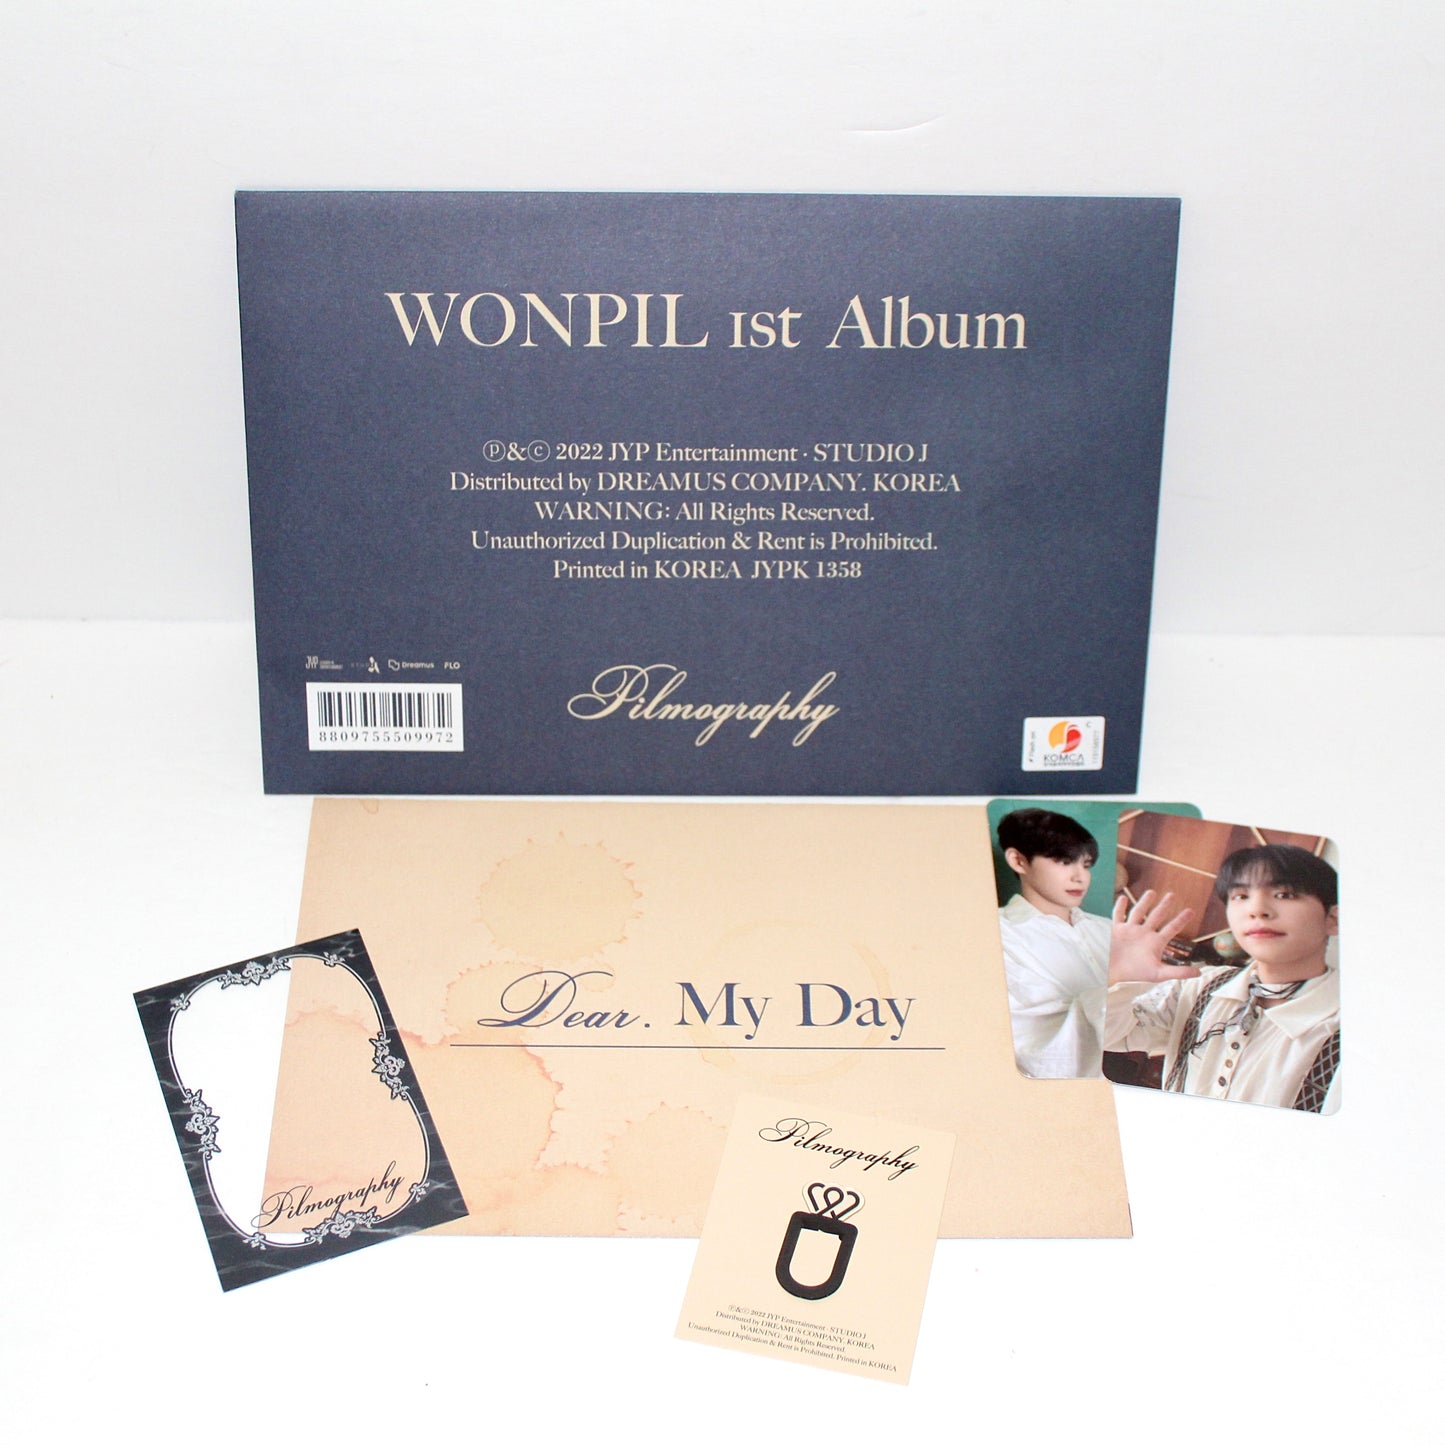 WONPIL 1st Album: Pilmography | Part 2 Ver.